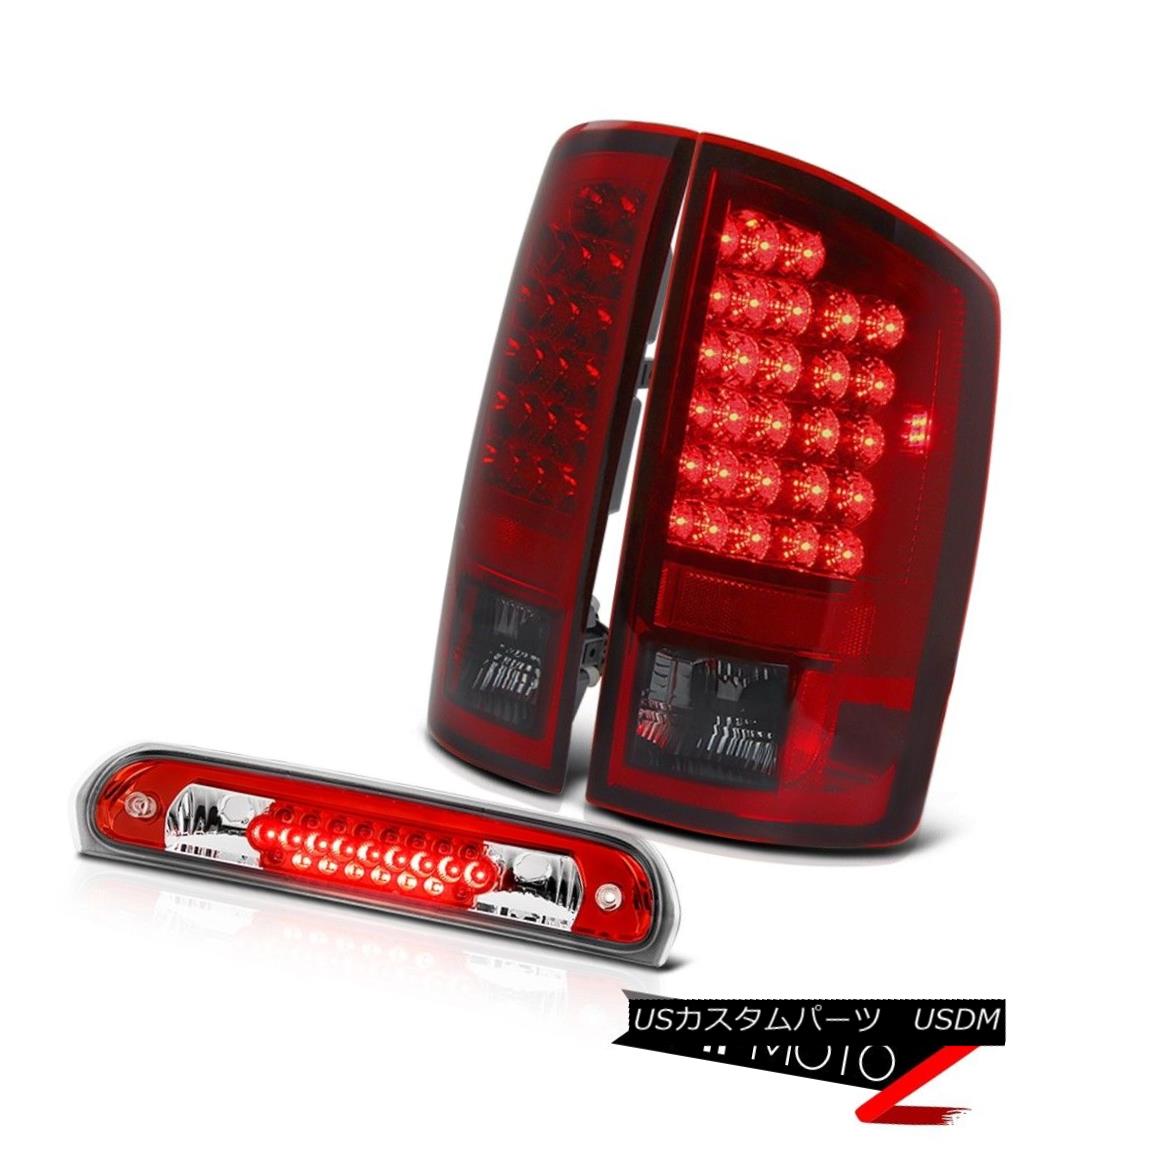 Cherry Red Tail Lights High Stop LED Third Brake High 2006 Dodge Ram PowerTechカテゴリテールライト状態新品メーカーDodge車種Ram 1500発送詳細送料一律 1000円（※北海道、沖縄、離島は省く）商品詳細輸入商品の為、英語表記となります。 Condition: New Brand: Venom Inc. [Tail Light] Dashboard Light: Error-Free Manufacturer Part Number: OEM#B0902H0B0906H_2002_2003_2004_2005_2006_A448 [Tail Light] Parking: Built-In LED Interchange Part Number: 55077348AF/55077347AF, 5072594AD [Tail Light] Reverse: Re-use Original 3157 Bulbs Other Part Number: CH2801147/CH2800147 [Tail Light] Side: Driver & Passenger Included Placement on Vehicle: Left, Right, Rear [Tail Light] Signal: Built-in LED Warranty: 60 Day Contact Us: TEL: 1-844-884-7847 | HOURS: 9am - 6pm PST [Tail Light] Brake: Built-In LED Returns: 60-Days LOVE IT or RETURN IT! UPC: 7426545523546 EAN: 7426545523546※以下の注意事項をご理解頂いた上で、ご入札下さい※■海外輸入品の為、NC,NRでお願い致します。■フィッテングや車検対応の有無については、画像と説明文よりお客様の方にてご判断をお願いしております。■USのカスタムパーツは国内の純正パーツを取り外した後、接続コネクタが必ずしも一致するとは限らず、加工が必要な場合がございます。■商品説明文中に英語にて”保障”に関する記載があっても適応はされませんので、ご理解ください。■初期不良（到着より7日以内）のみ保証対象とします。ただし、取り付け後は、保証対象外とします。■海外倉庫から到着した製品を、再度国内で検品を行い、日本郵便または佐川急便にて発送となります。■お届けまでには、2〜3週間程頂いております。ただし、天候次第で多少遅れが発生する場合もあります。■商品落札後のお客様のご都合によるキャンセルはお断りしておりますが、商品落札金額の30％の手数料をいただいた場合のみお受けいたします。■他にもUSパーツを多数出品させて頂いておりますので、ご覧頂けたらと思います。■USパーツの輸入代行も行っておりますので、ショップに掲載されていない商品でもお探しする事が可能です!!お気軽にお問い合わせ下さい。&nbsp;